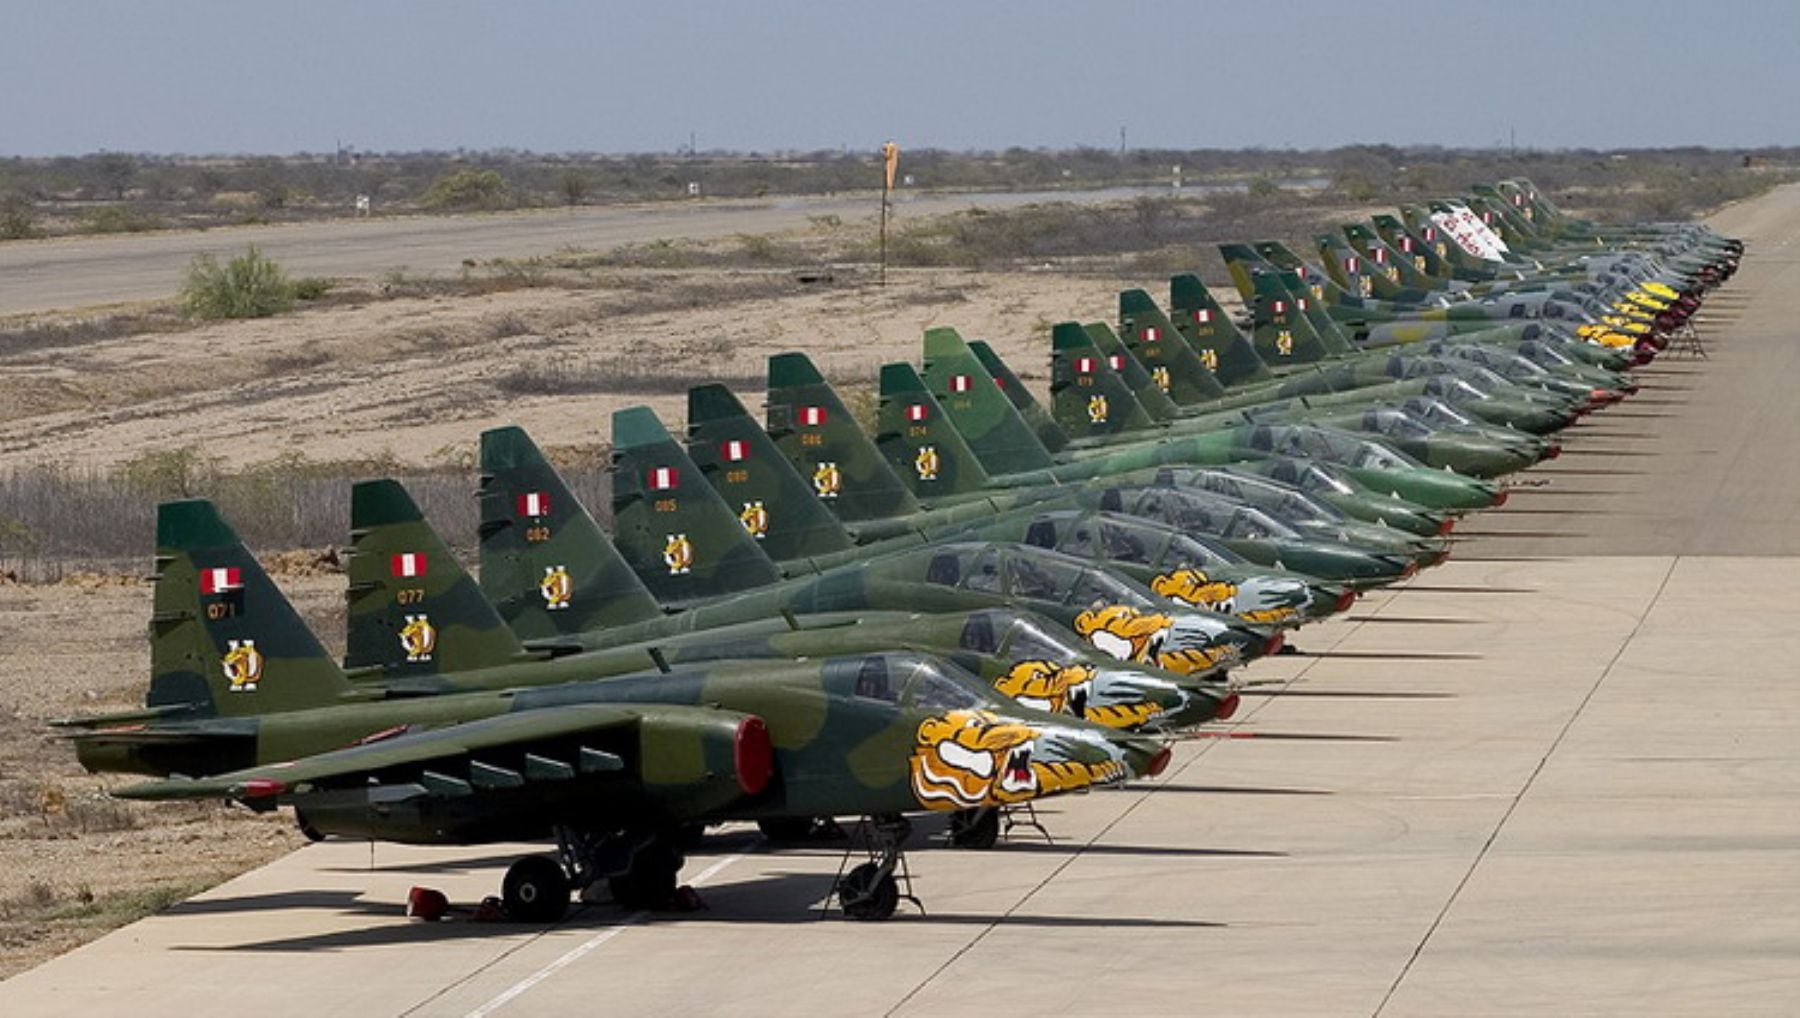 La población peruana busca conocer con que otras aeronaves cuenta las Fuerzas Armadas del Perú, tras la noticia de que se adquirió de España seis 'Morsa' -con 50 años de servicio- a 600 euros. (Andina)